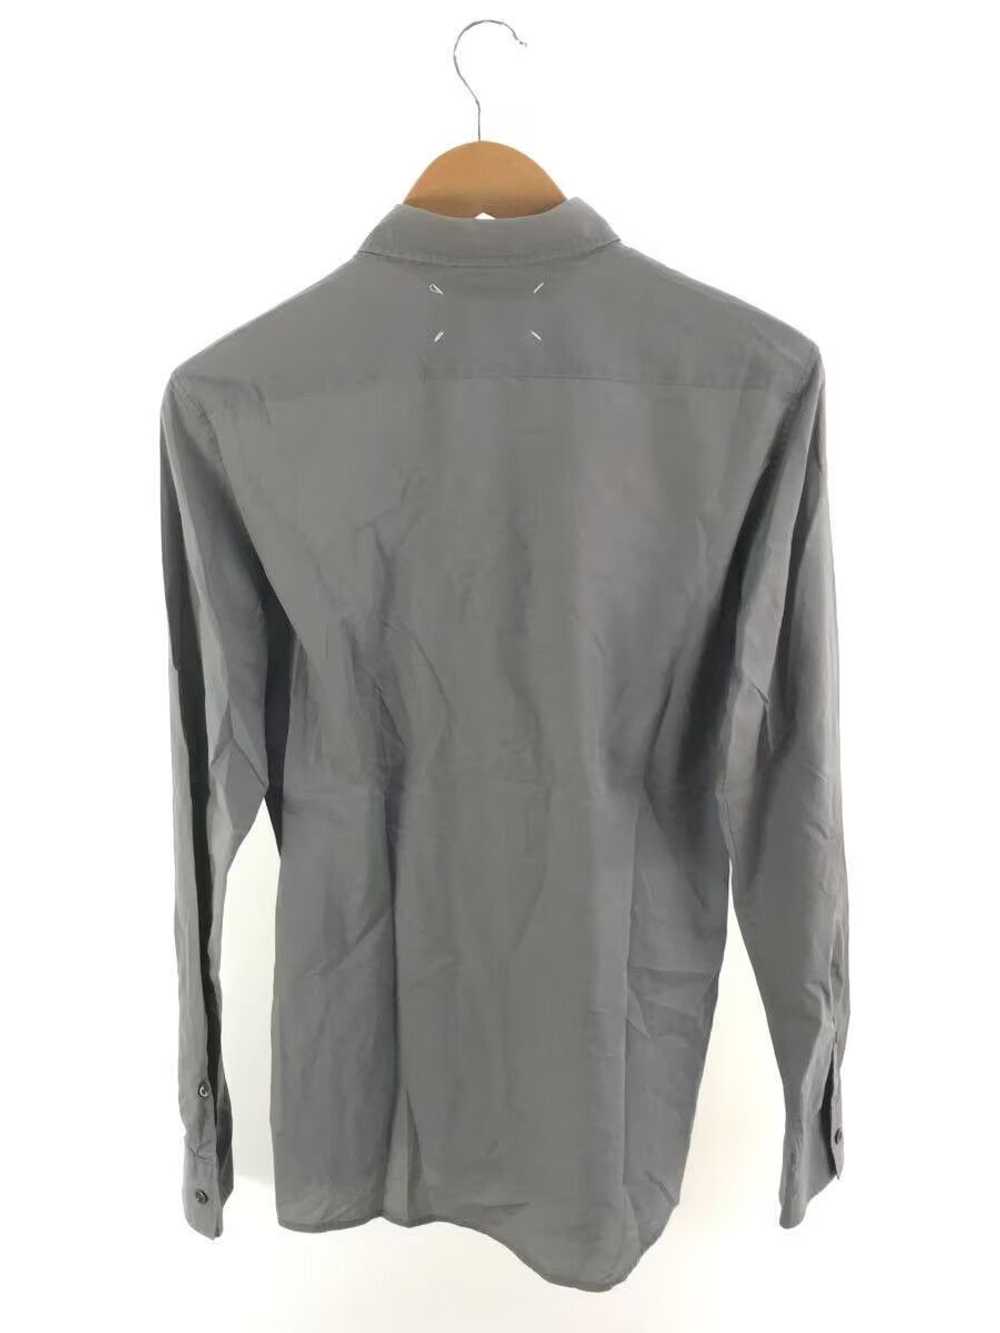 Maison Margiela AW10 Archive Long Sleeve Shirt - image 2